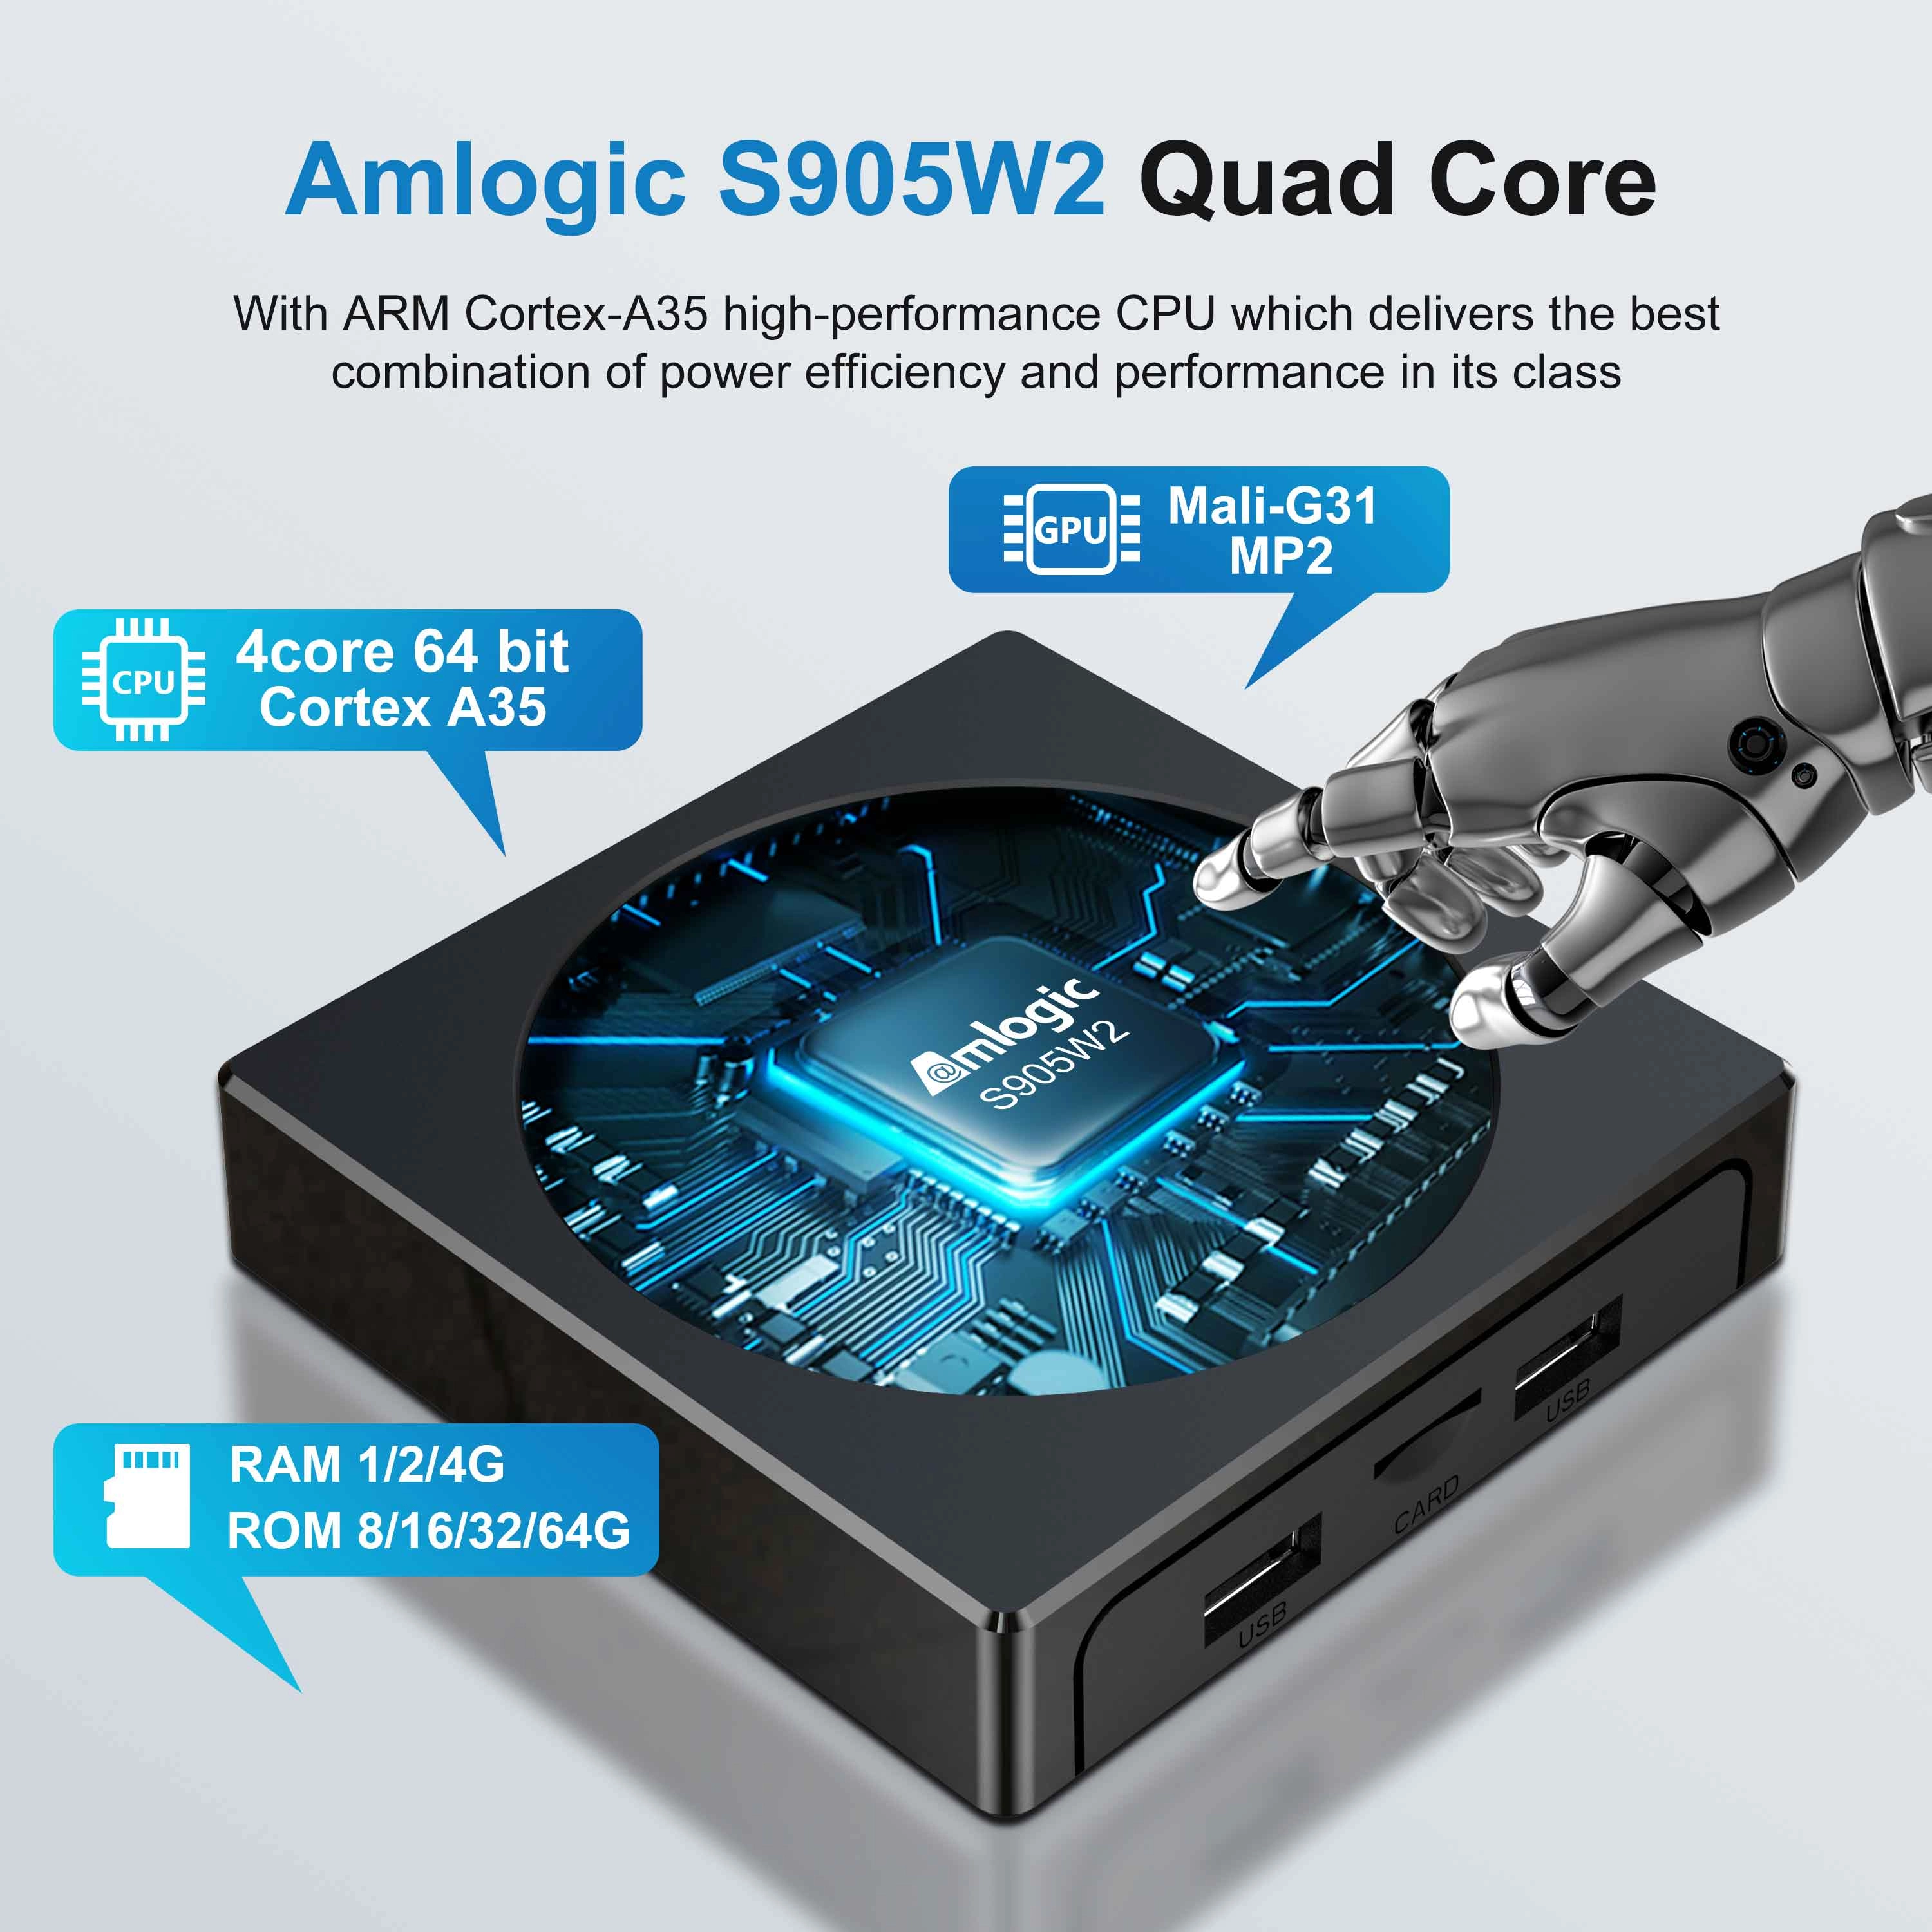 X98 Mini Amlogic S905W2 Quad Core Android 11 4K2K TV Box